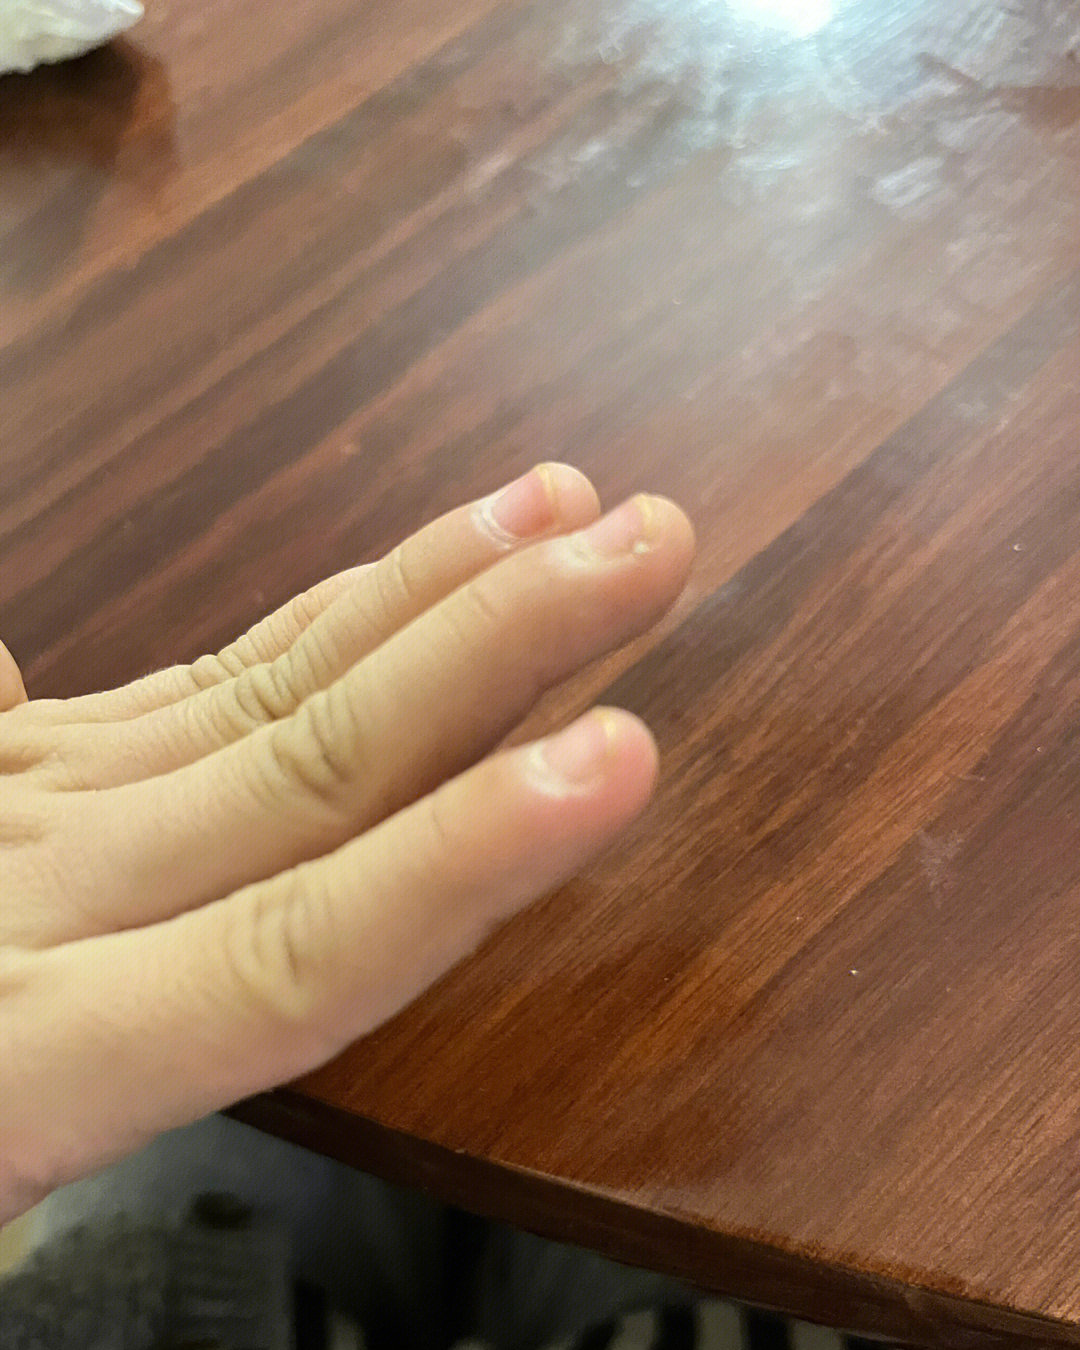 这是杵状指吗